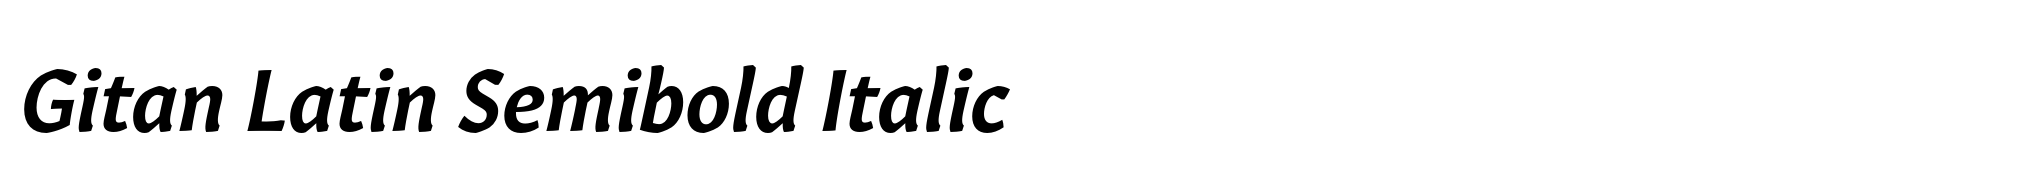 Gitan Latin Semibold Italic image